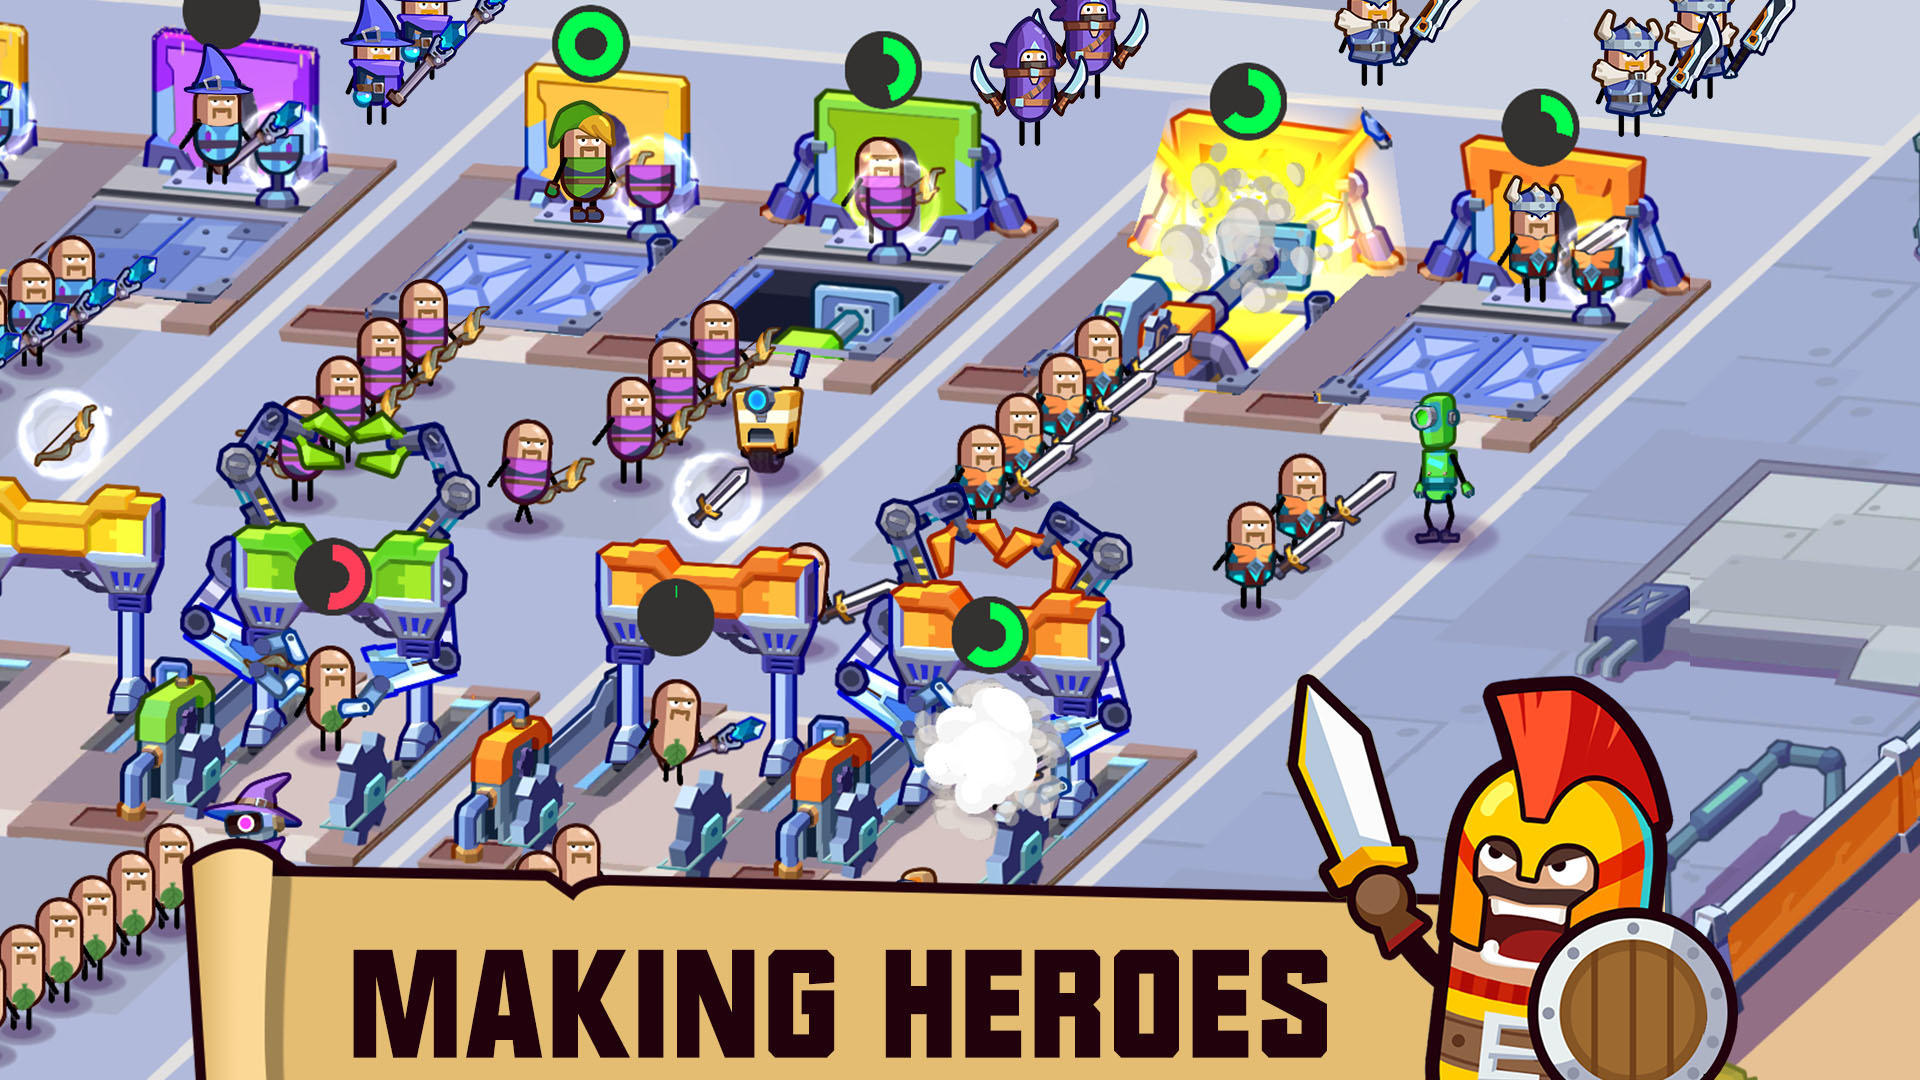 Screenshot of Hero Making Tycoon